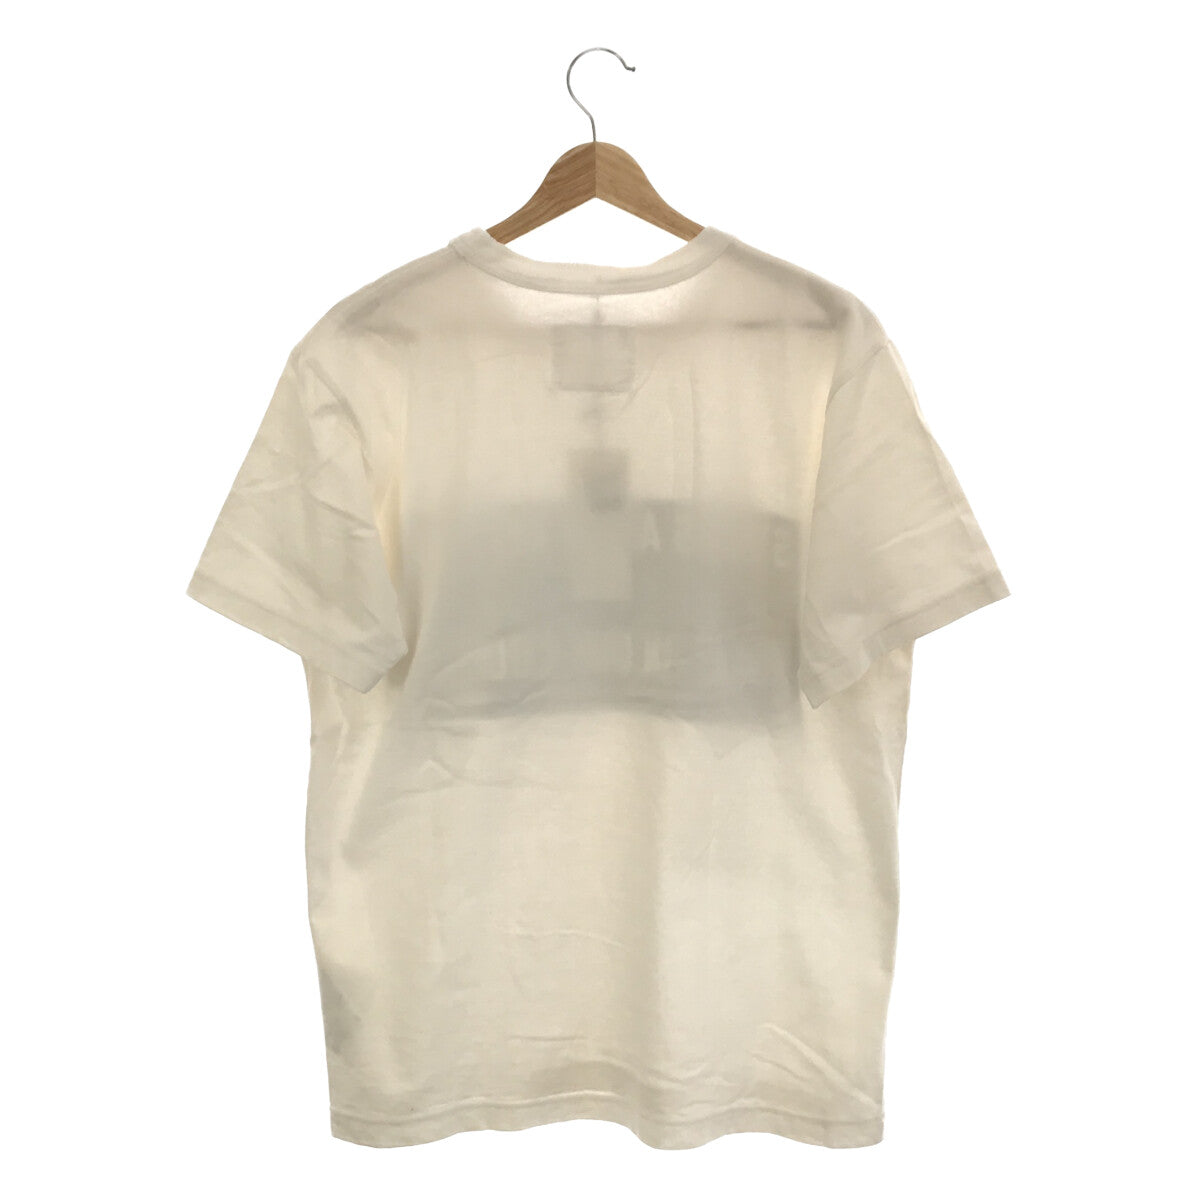 sacai / サカイ | × Lawrence Weiner / ローレンスウェイナー コラボ アートプリント Tシャツ | 2 |